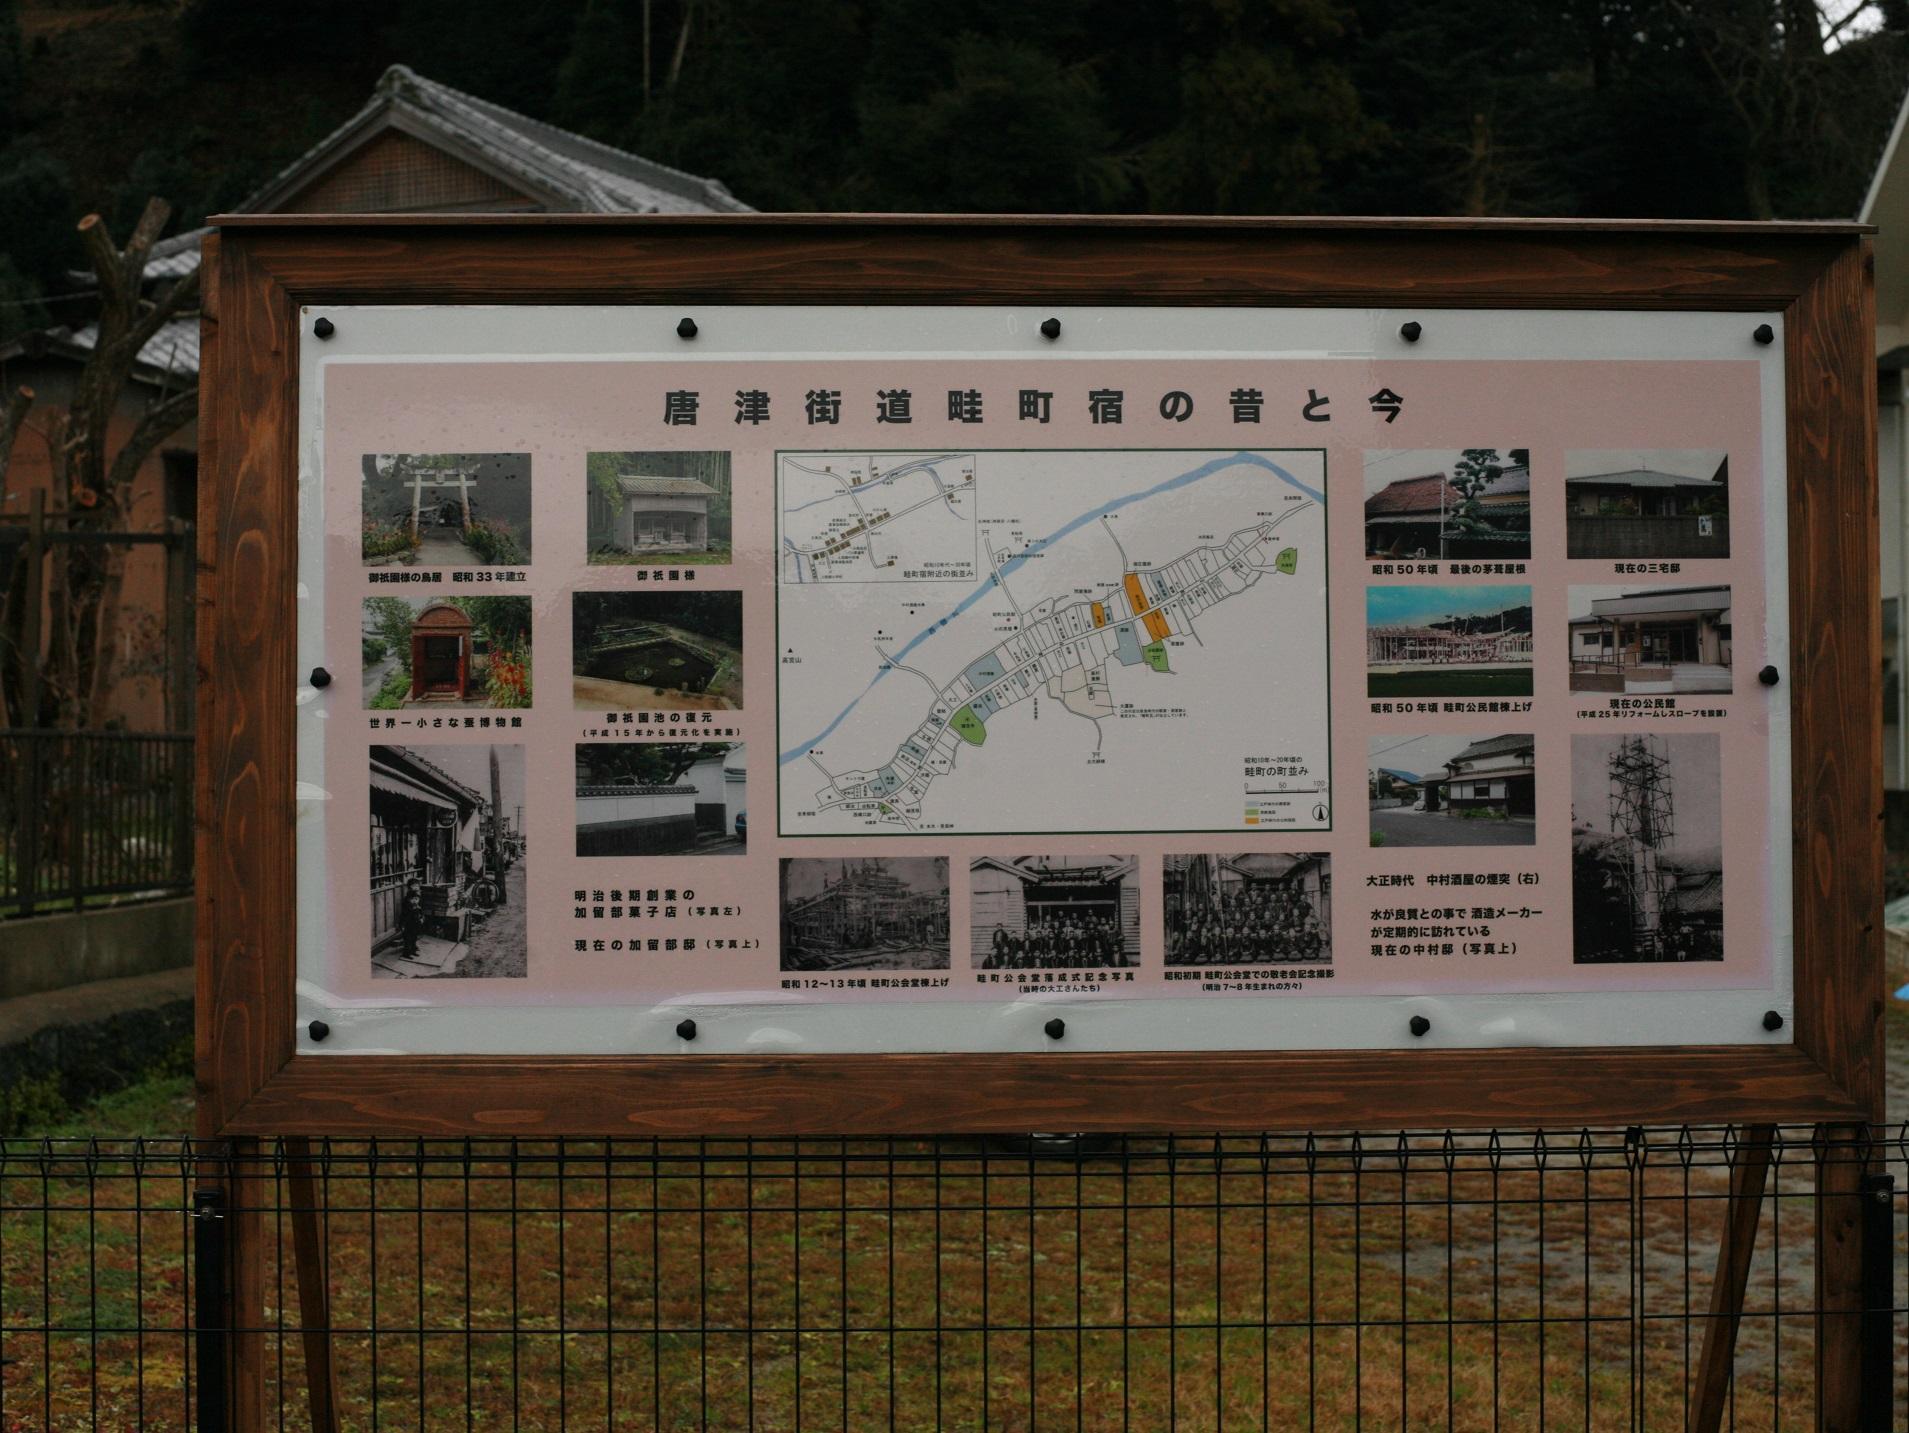 畦町の見所を伝える、「唐津街道畦町宿の昔と今」と書かれた案内板の写真